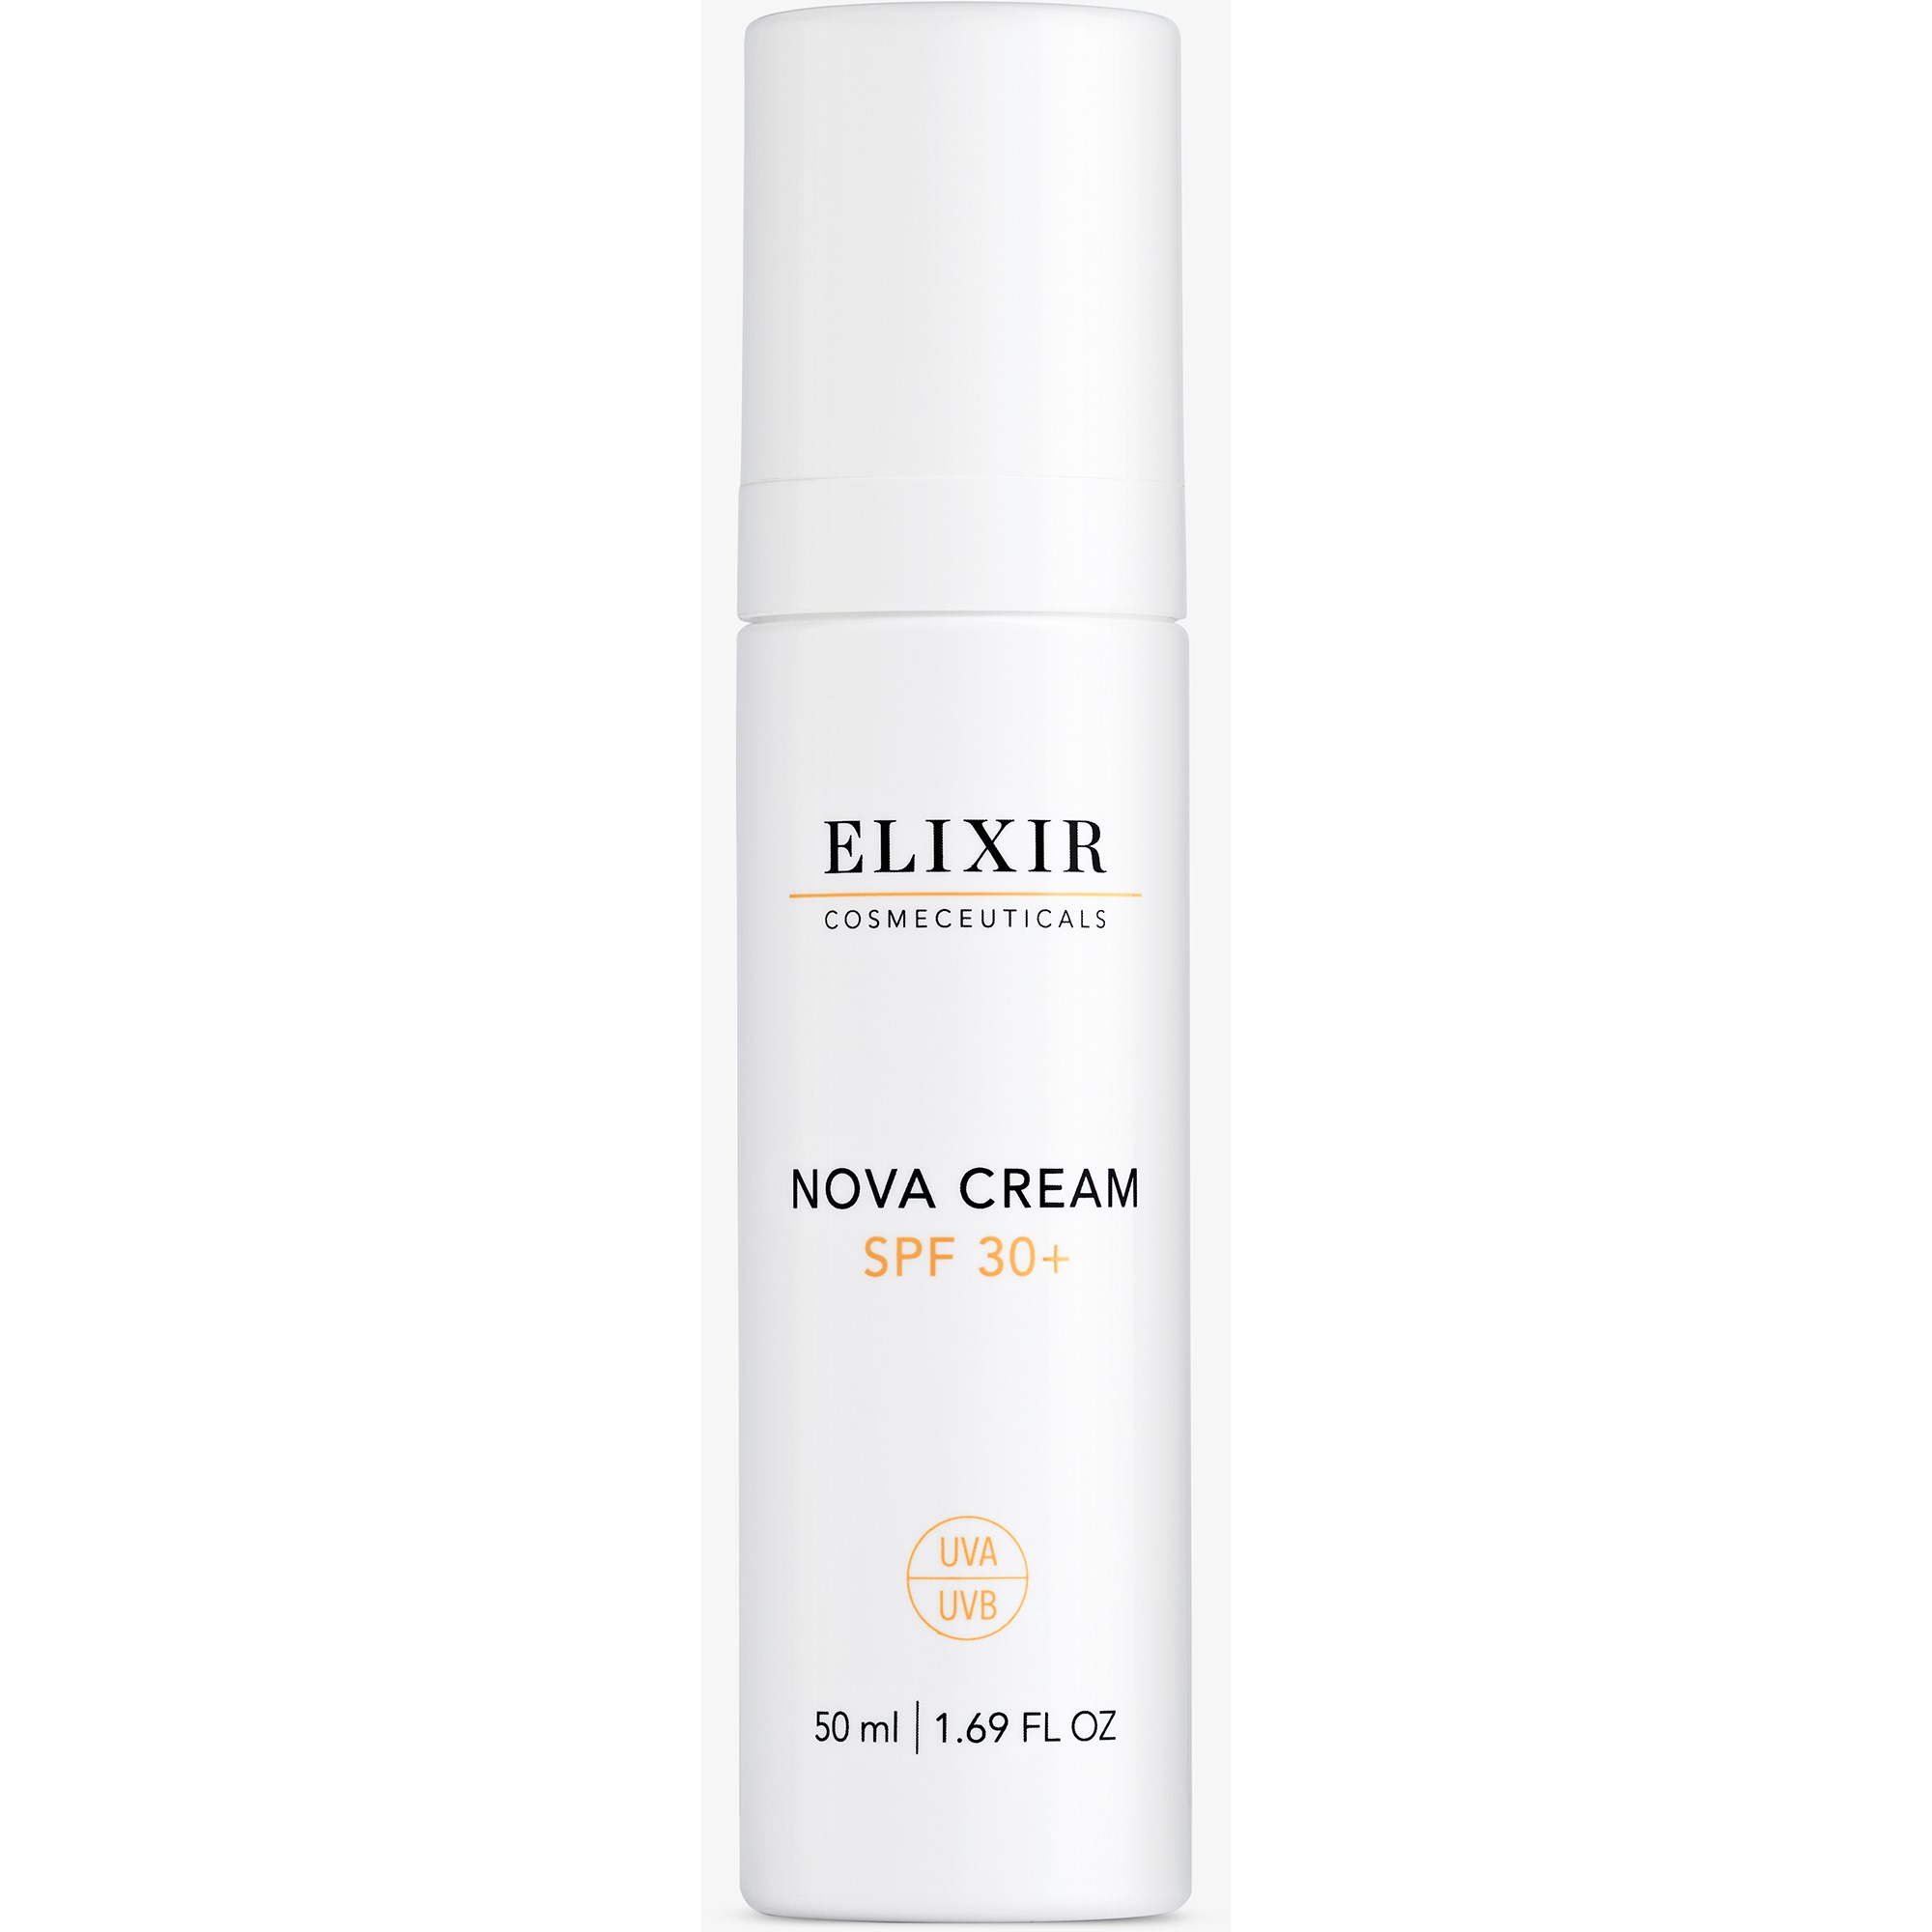 Elixir Cosmeceuticals Nova Cream SPF 30+